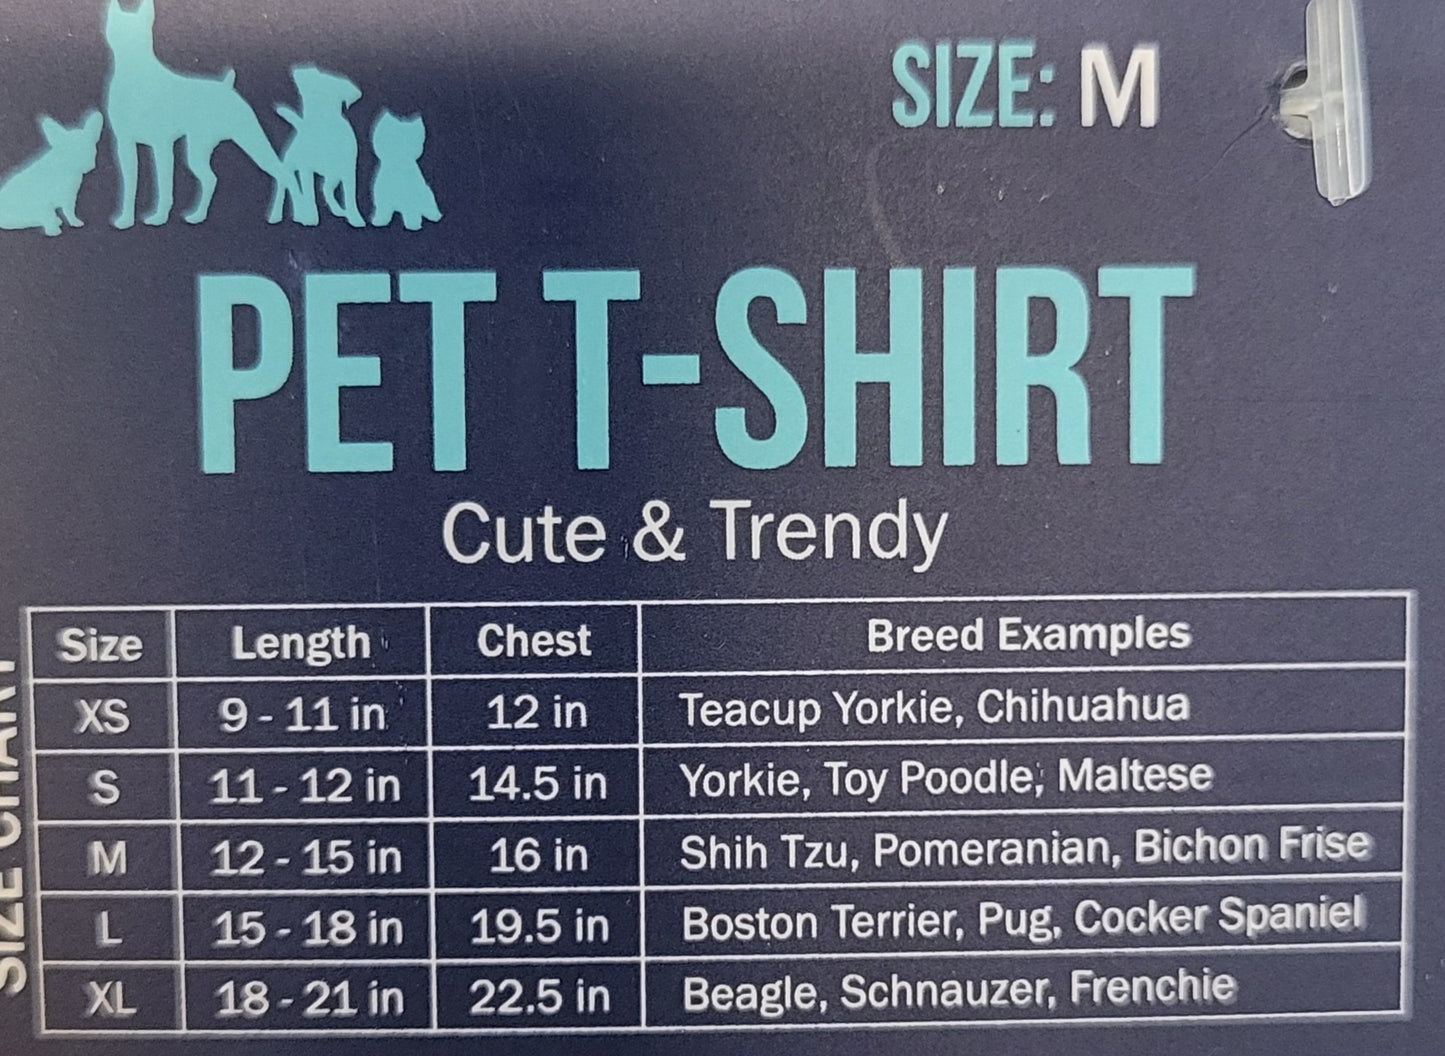 Pet Shirt